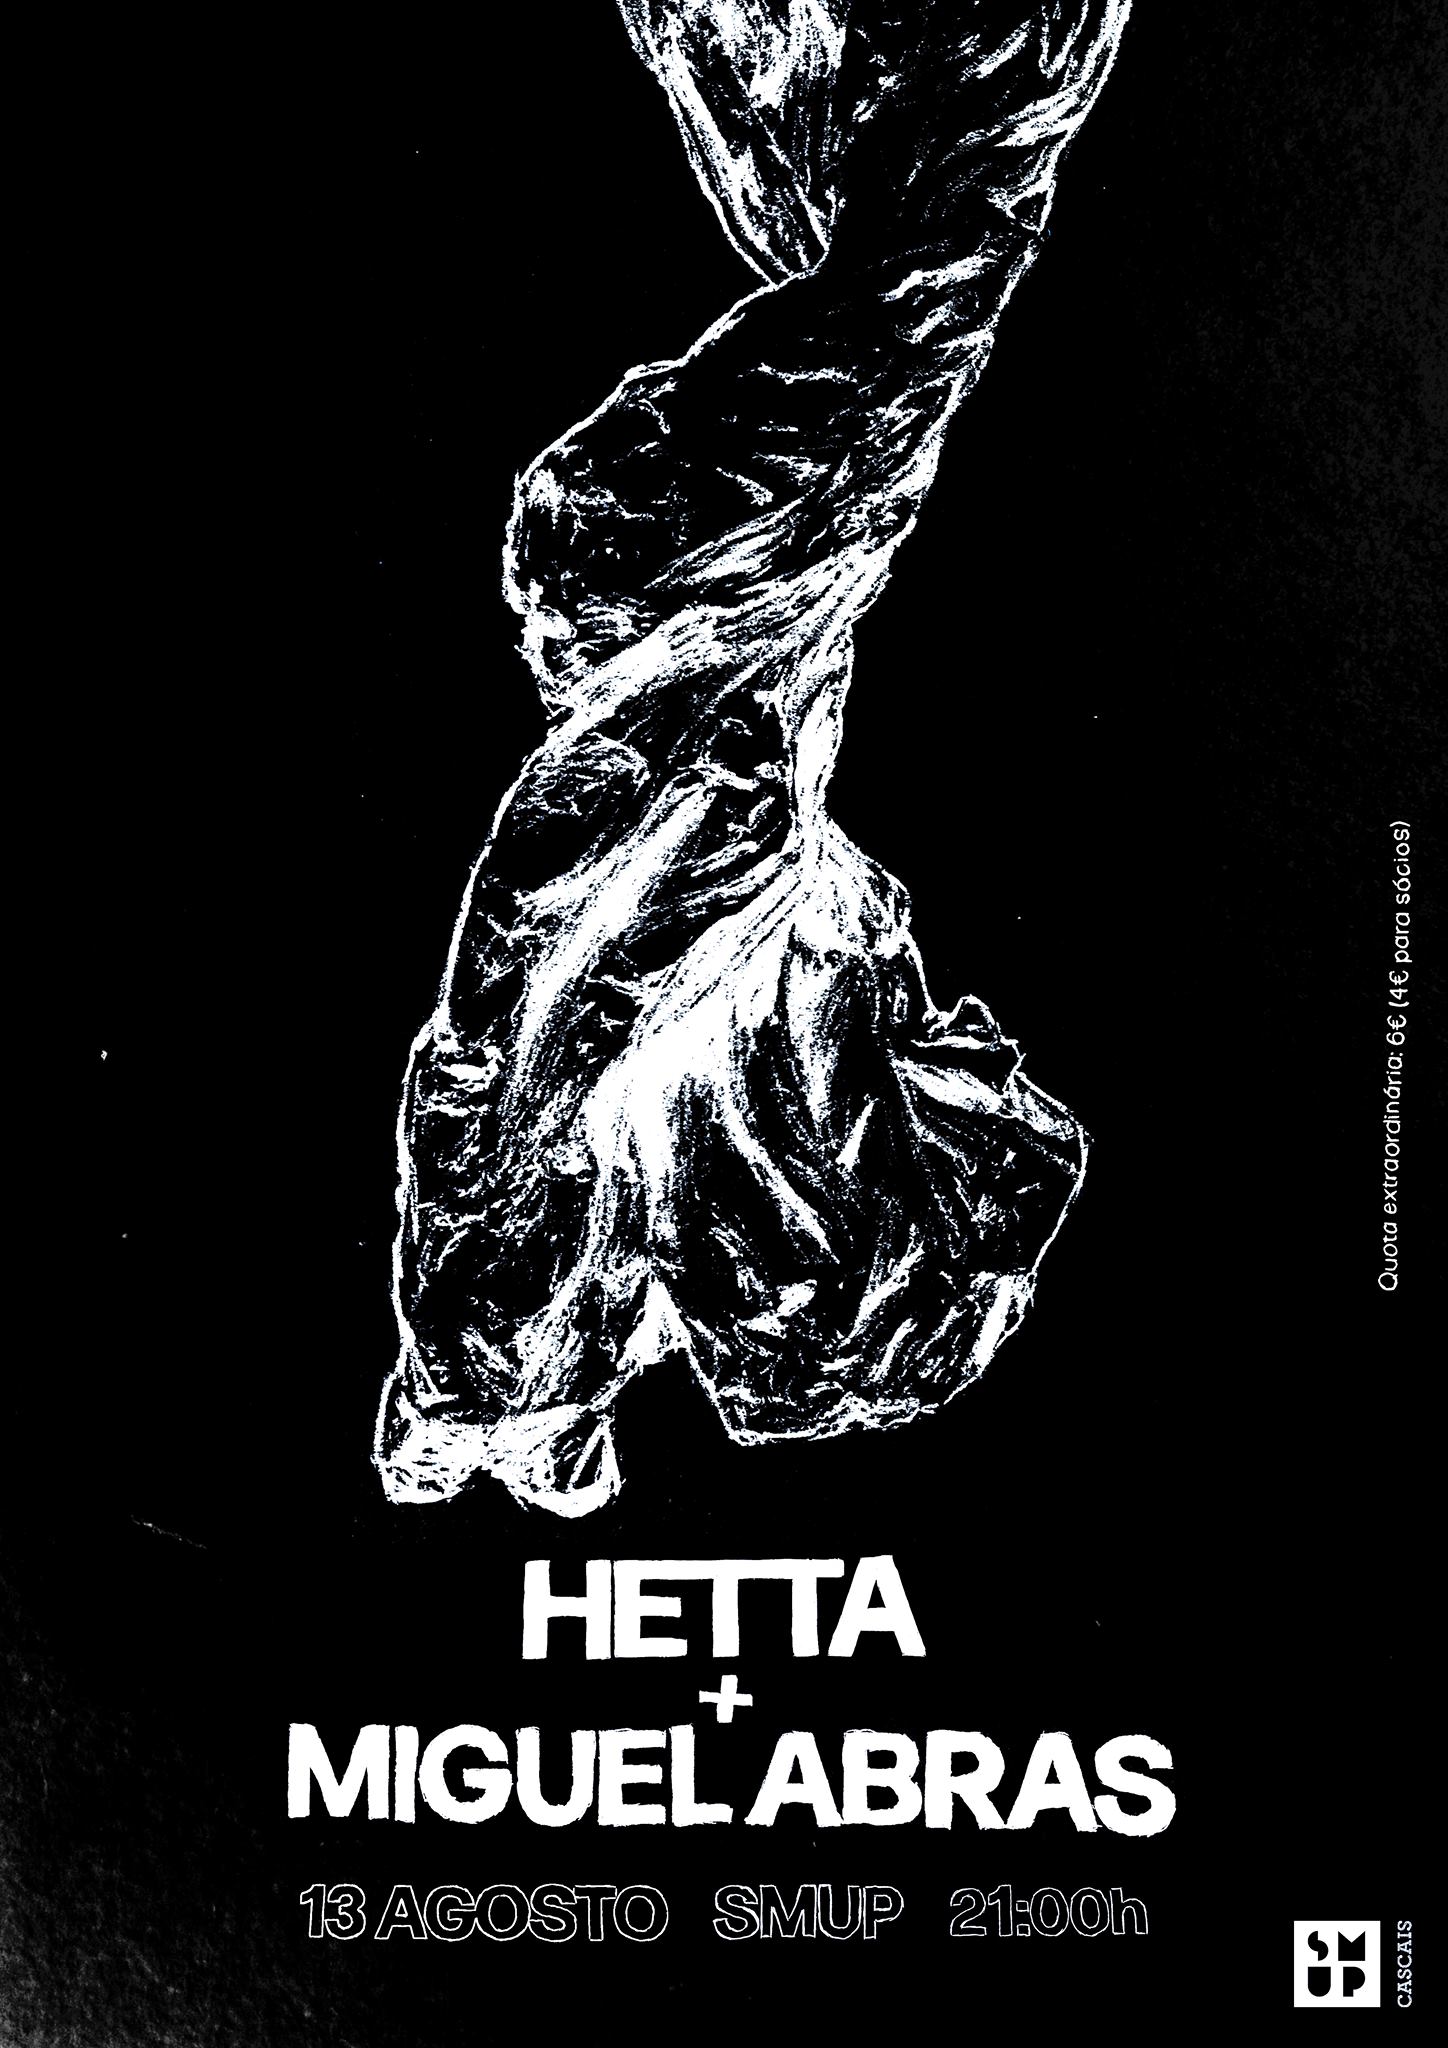 Hetta + Miguel Abras